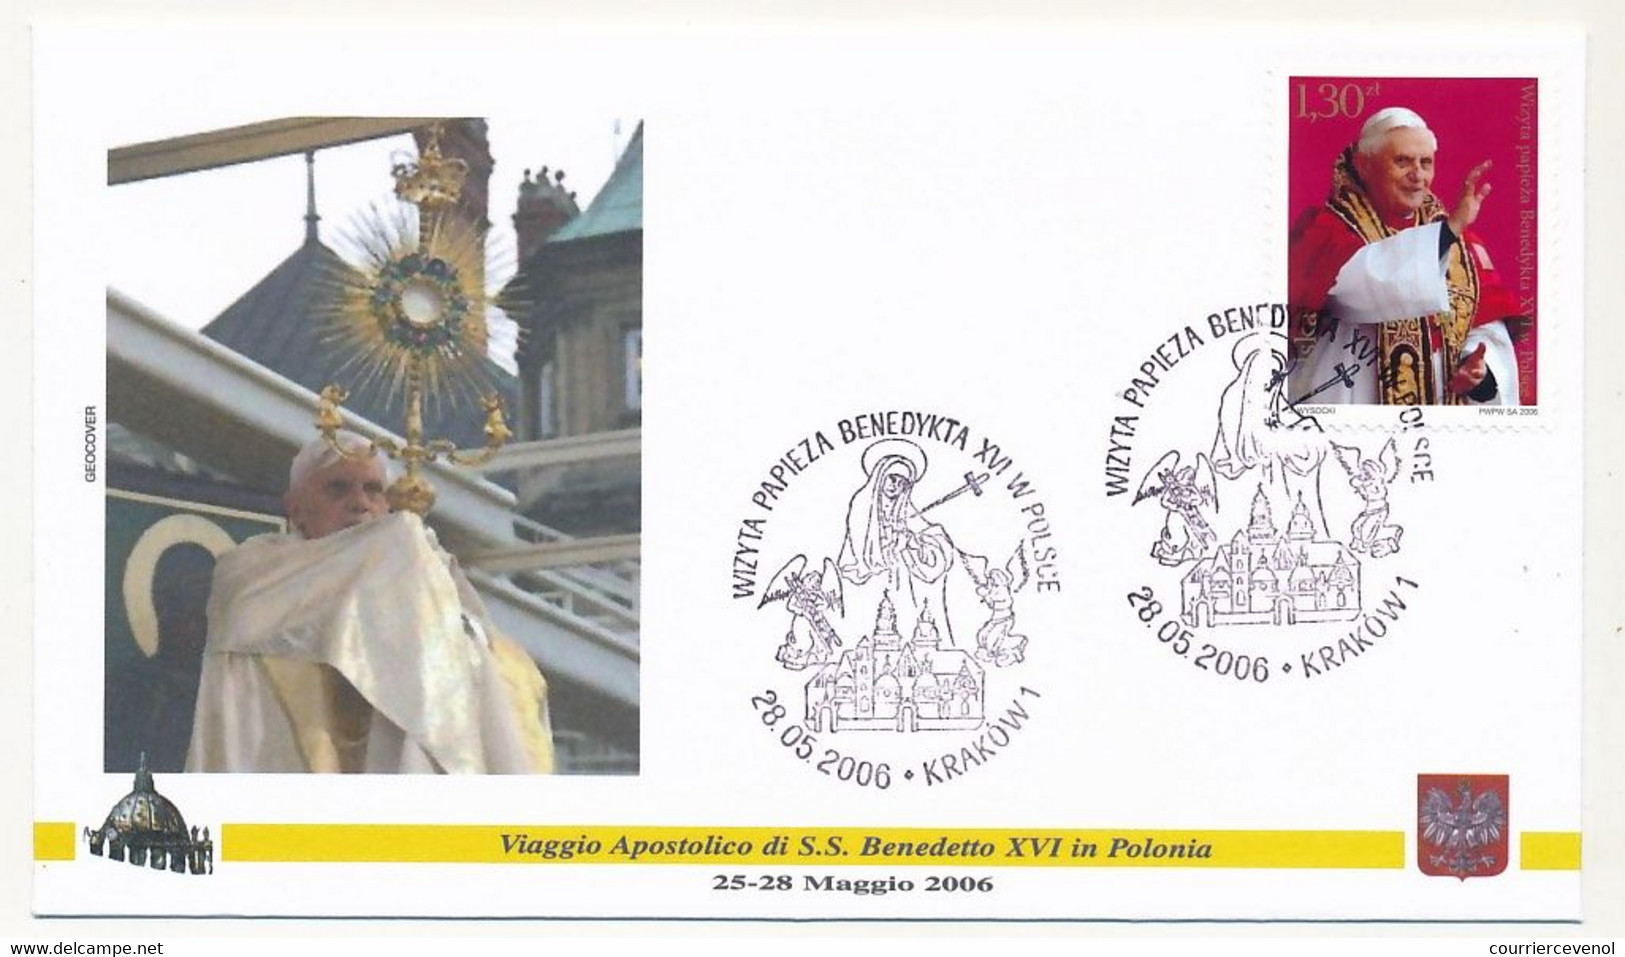 POLOGNE - 7 enveloppes illustrées - Voyage du Pape Benoit XVI en Pologne - Mai 2006 - dont Auschwitz-Birkenau